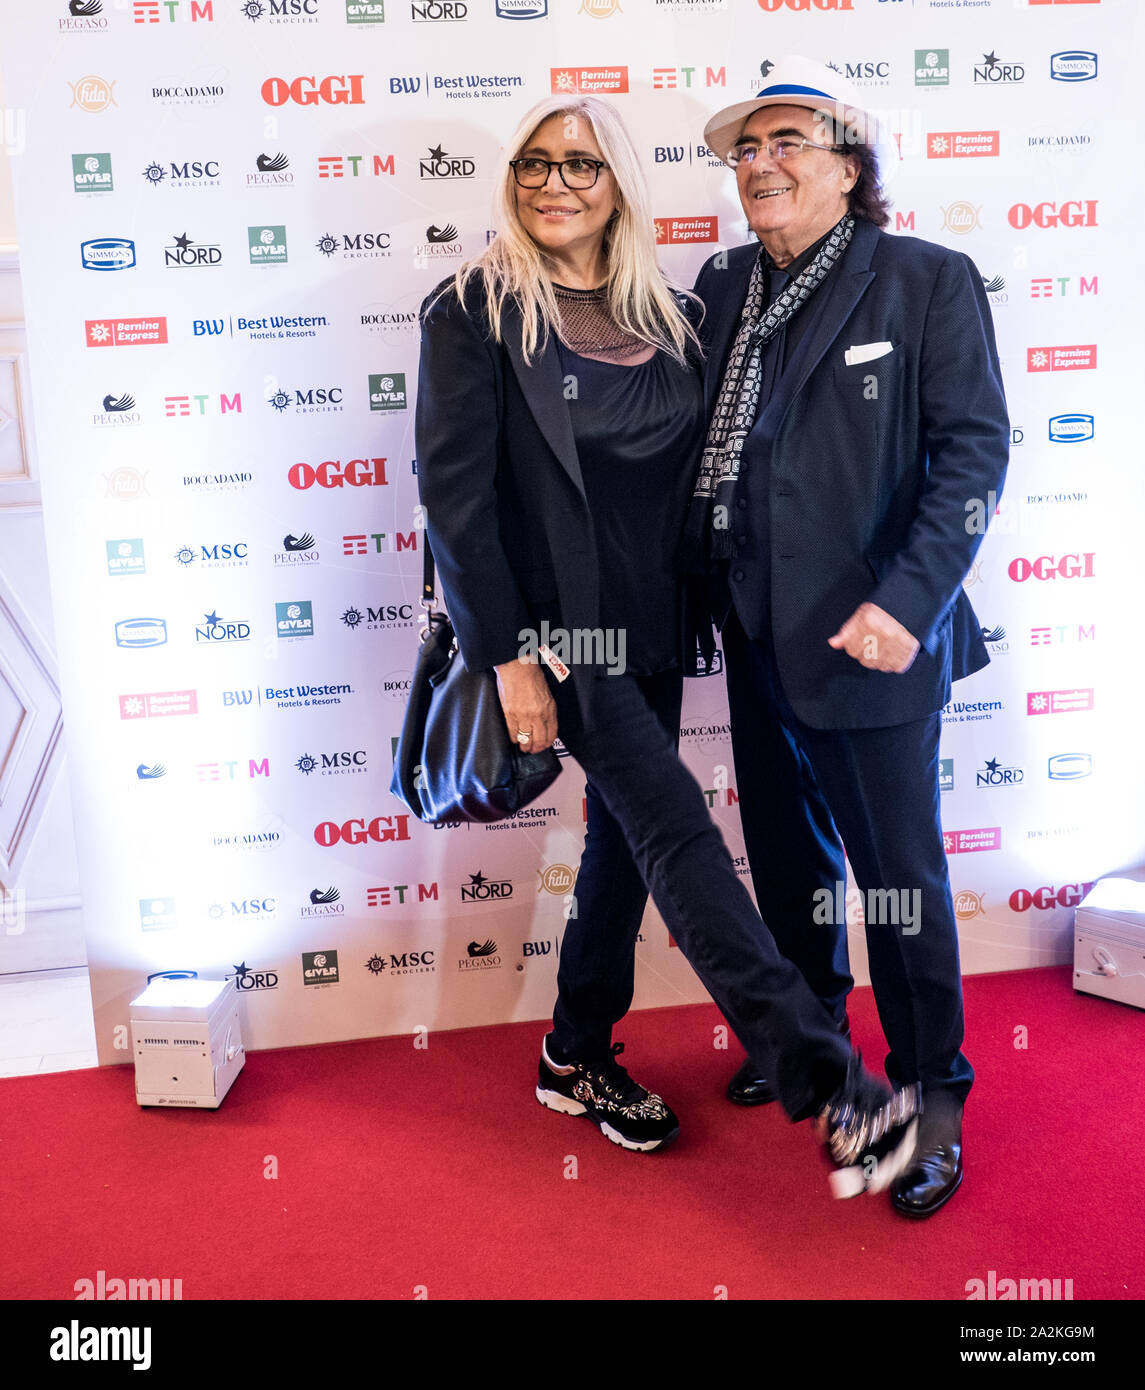 Mara Venier et Albano Carrisi assister à l'anniversaire du magazine OGGI, à l'hôtel Principe di Savoia à Milan Banque D'Images